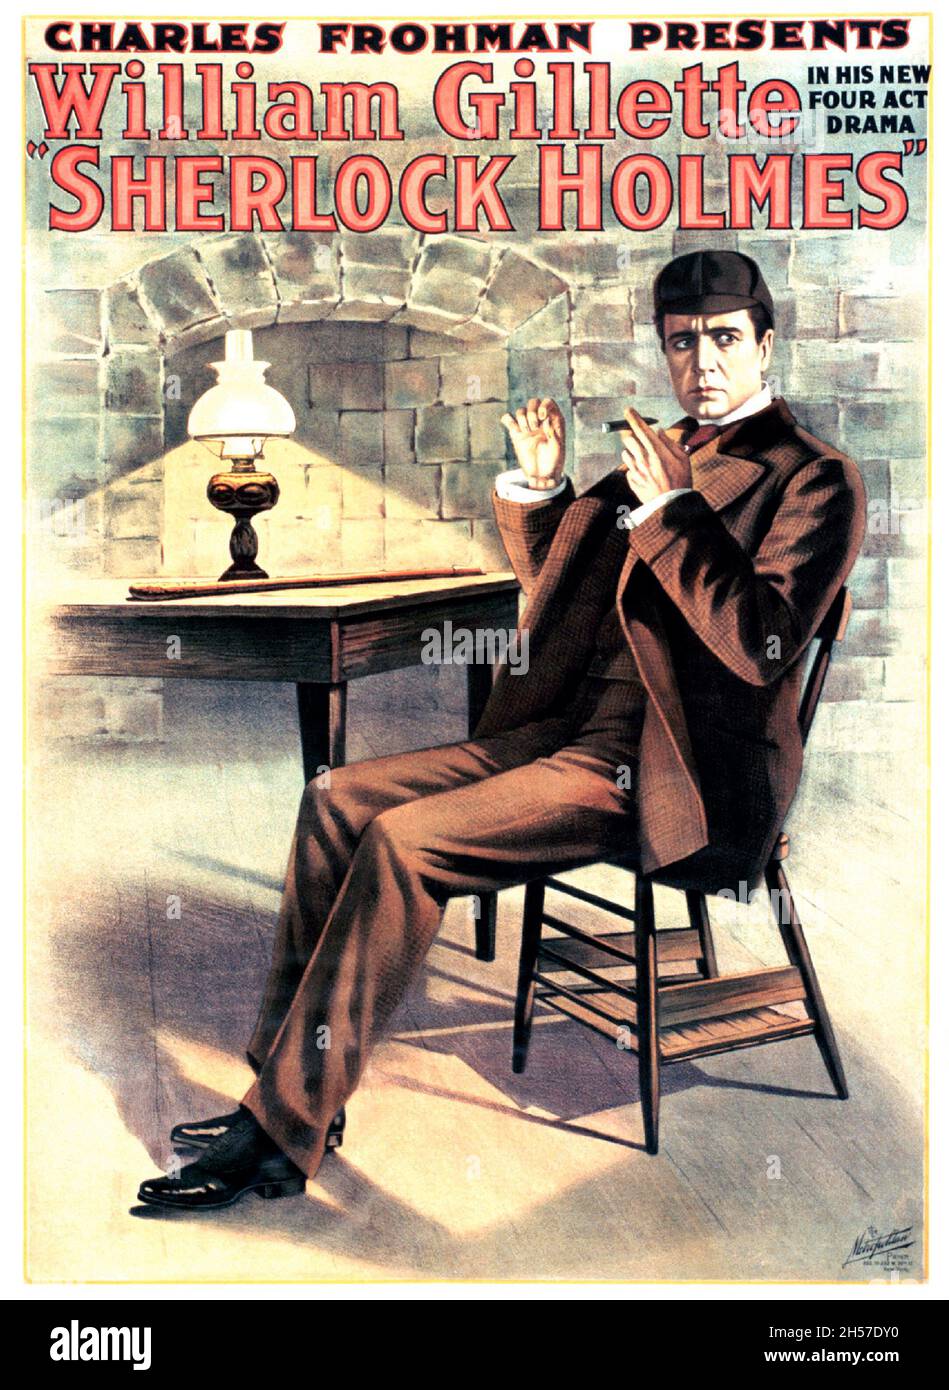 Affiche de film vintage pour le film de 1916 Sherlock Holmes - ancien et vintage poster de film feat William Gillette.Présenté par Charles Frohman. Banque D'Images